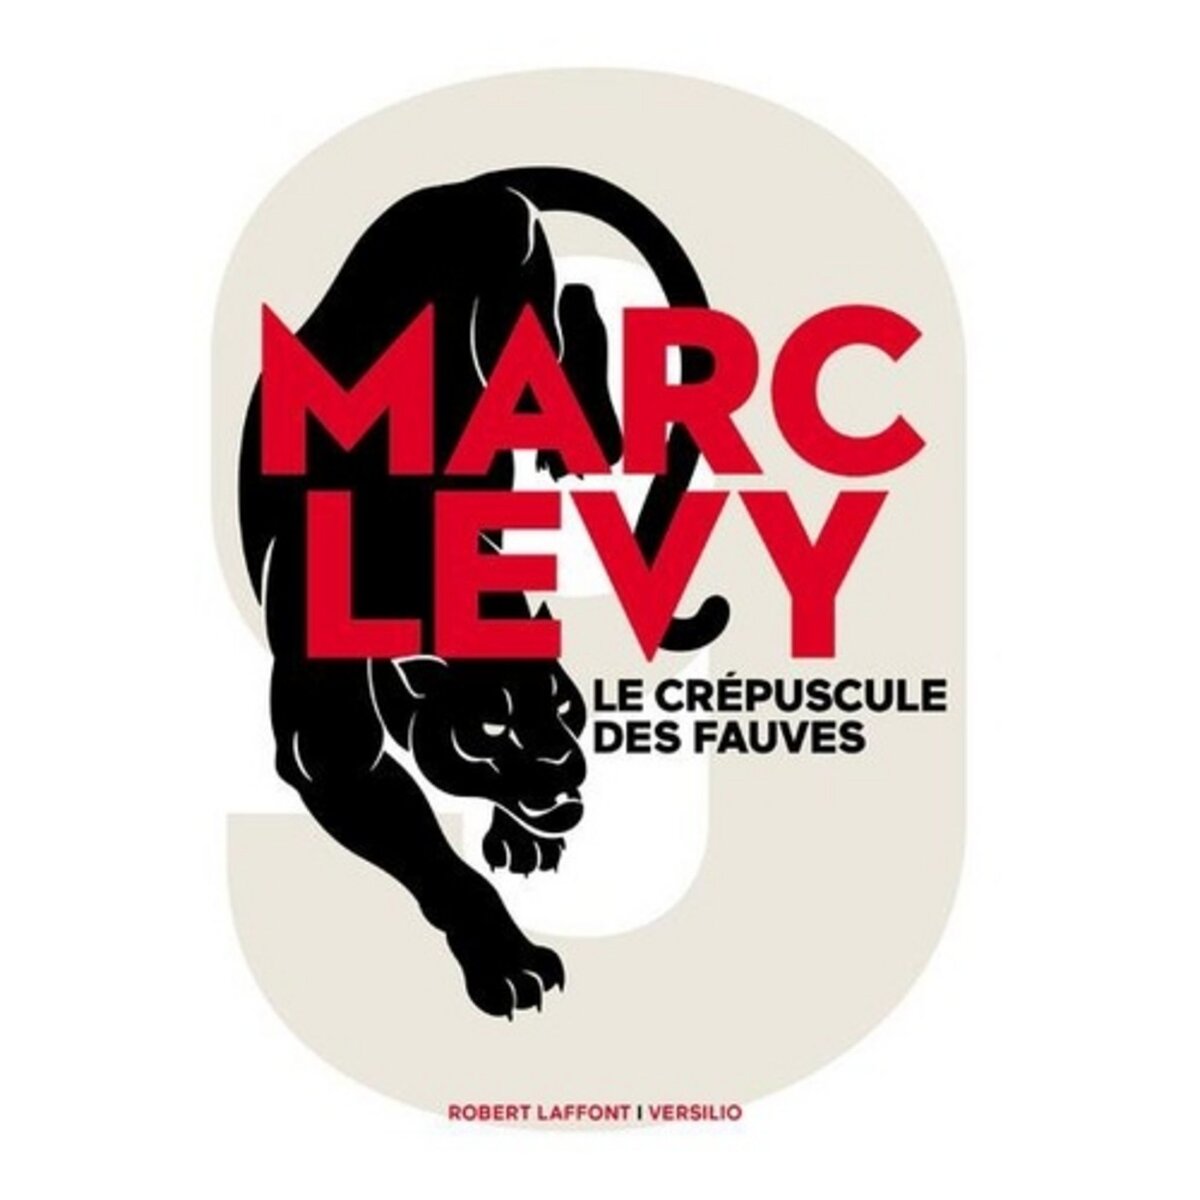  9 TOME 2 : LE CREPUSCULE DES FAUVES, Levy Marc